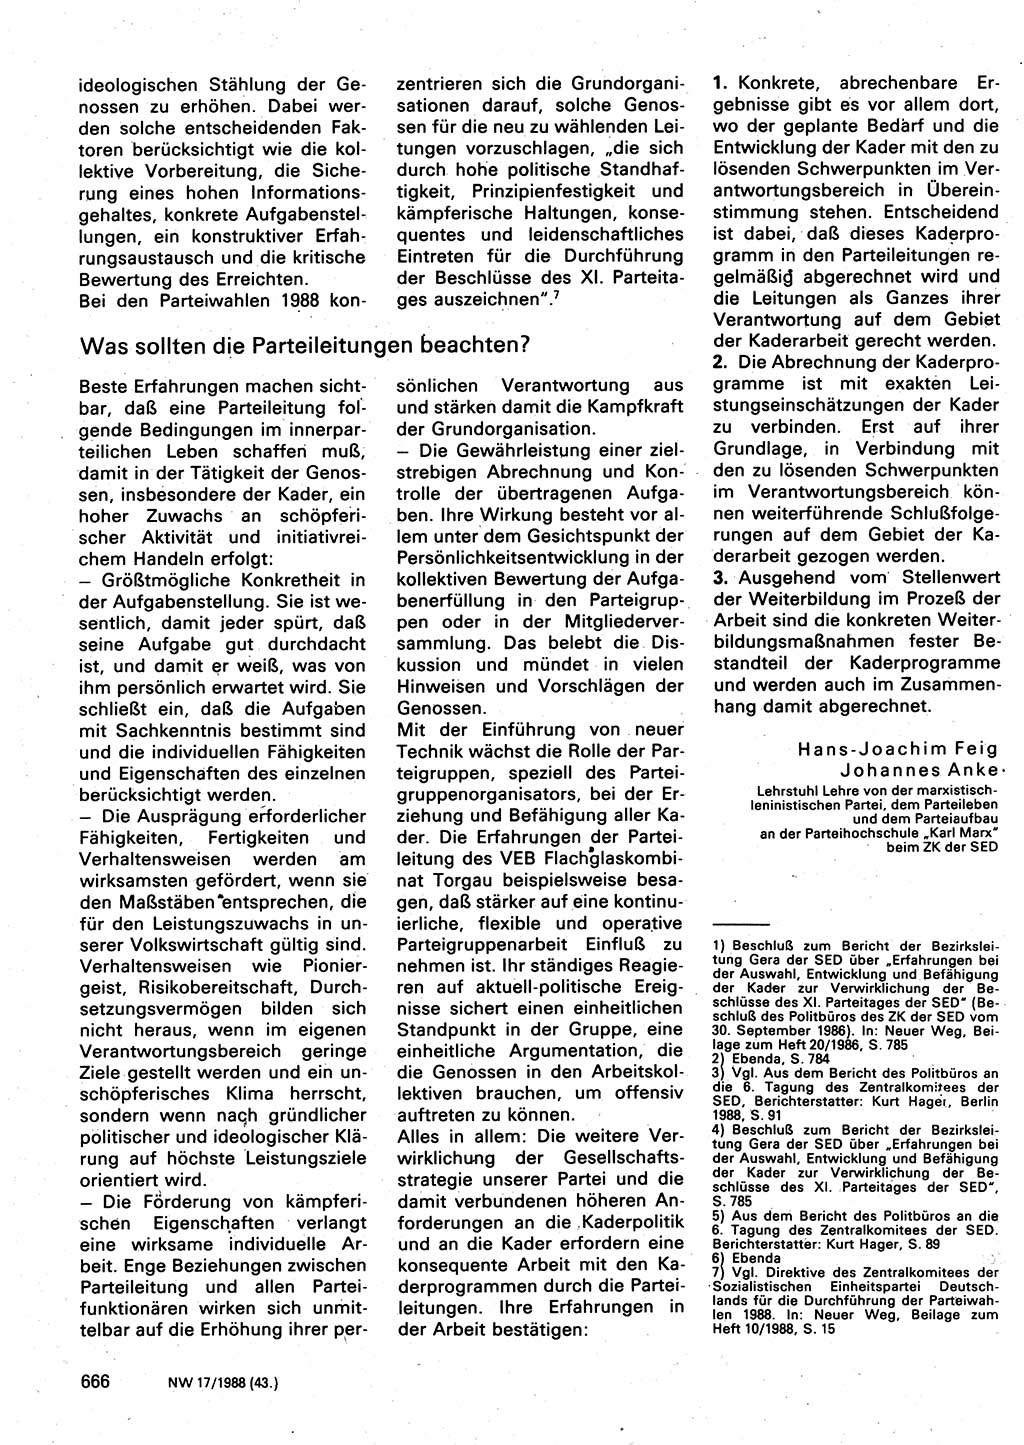 Neuer Weg (NW), Organ des Zentralkomitees (ZK) der SED (Sozialistische Einheitspartei Deutschlands) für Fragen des Parteilebens, 43. Jahrgang [Deutsche Demokratische Republik (DDR)] 1988, Seite 666 (NW ZK SED DDR 1988, S. 666)